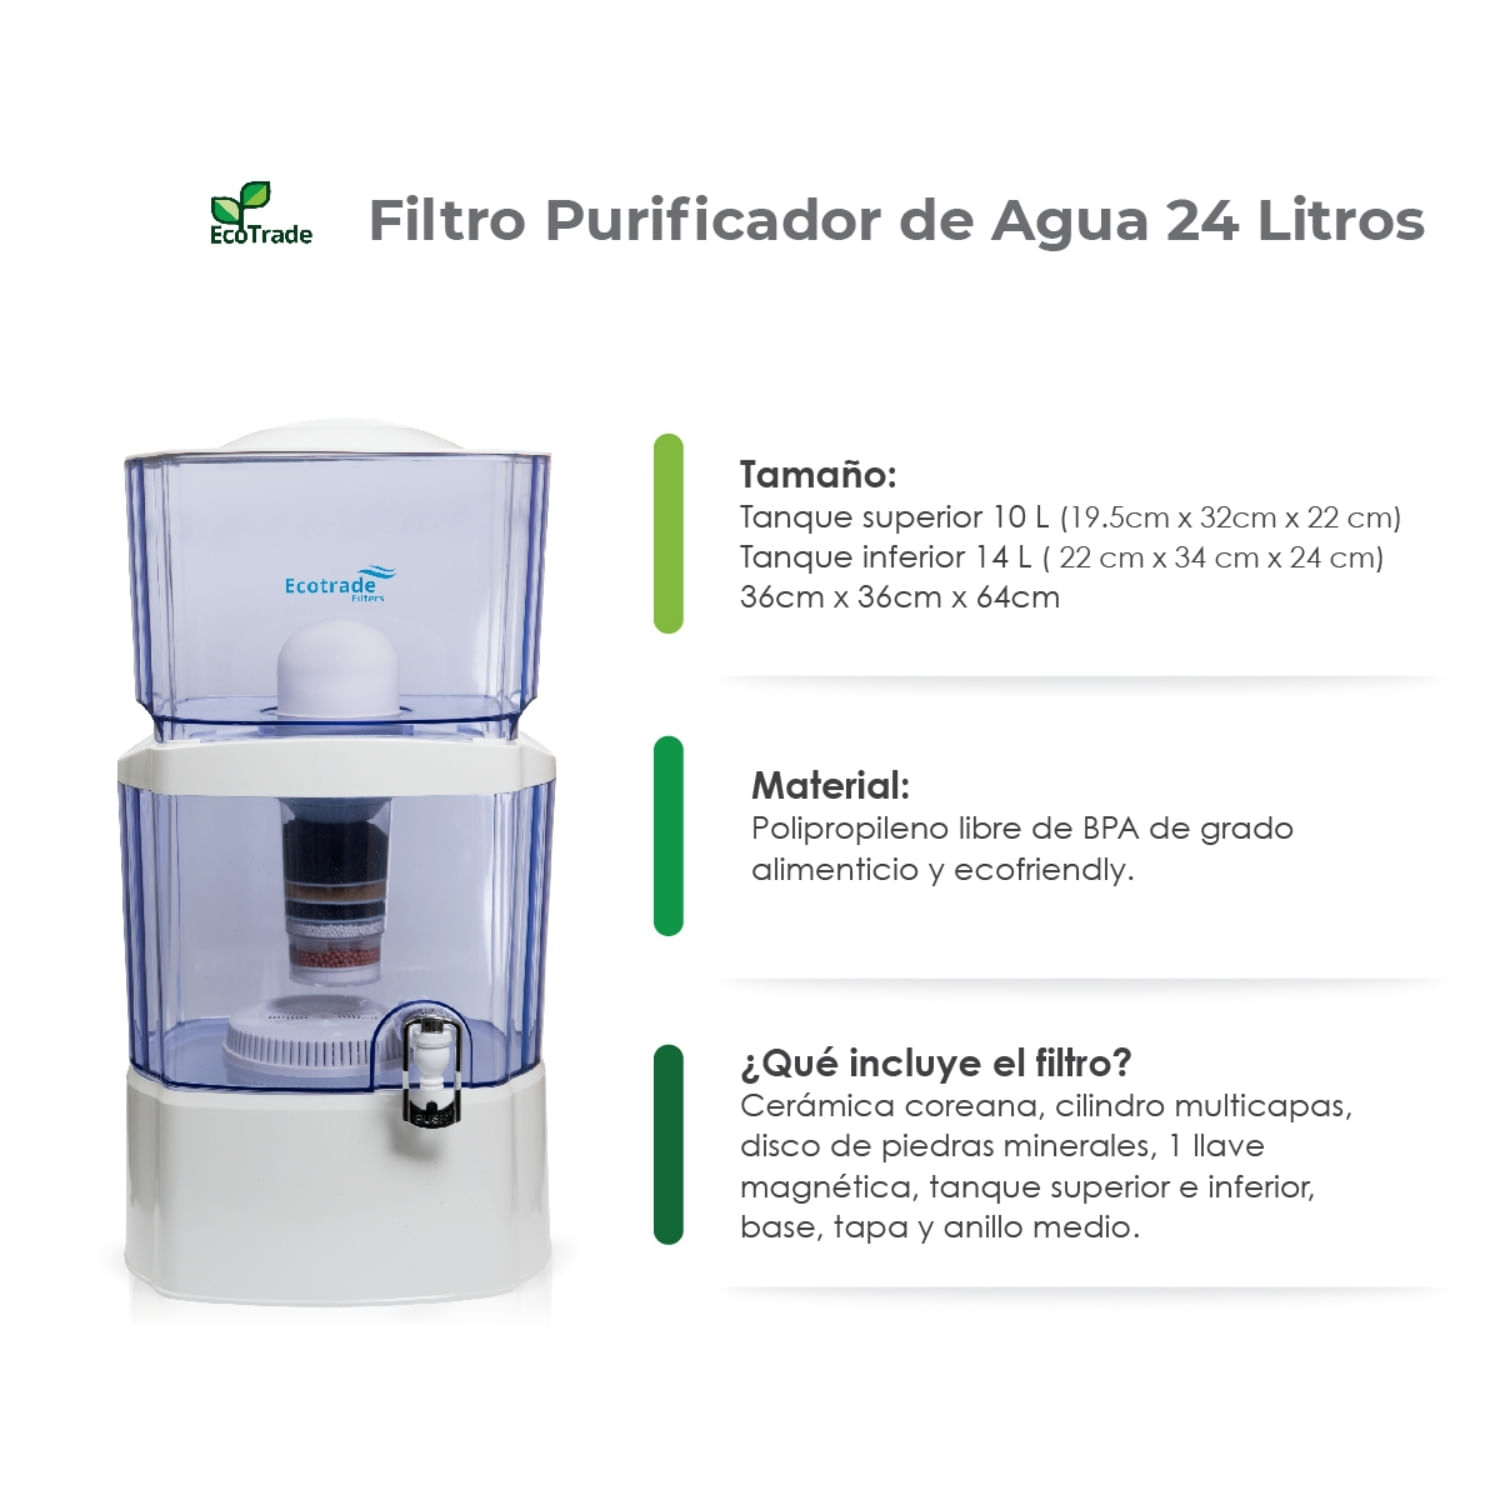 Filtro Purificador Agua Alcalina Doble Filtración, Ecotrade Filters